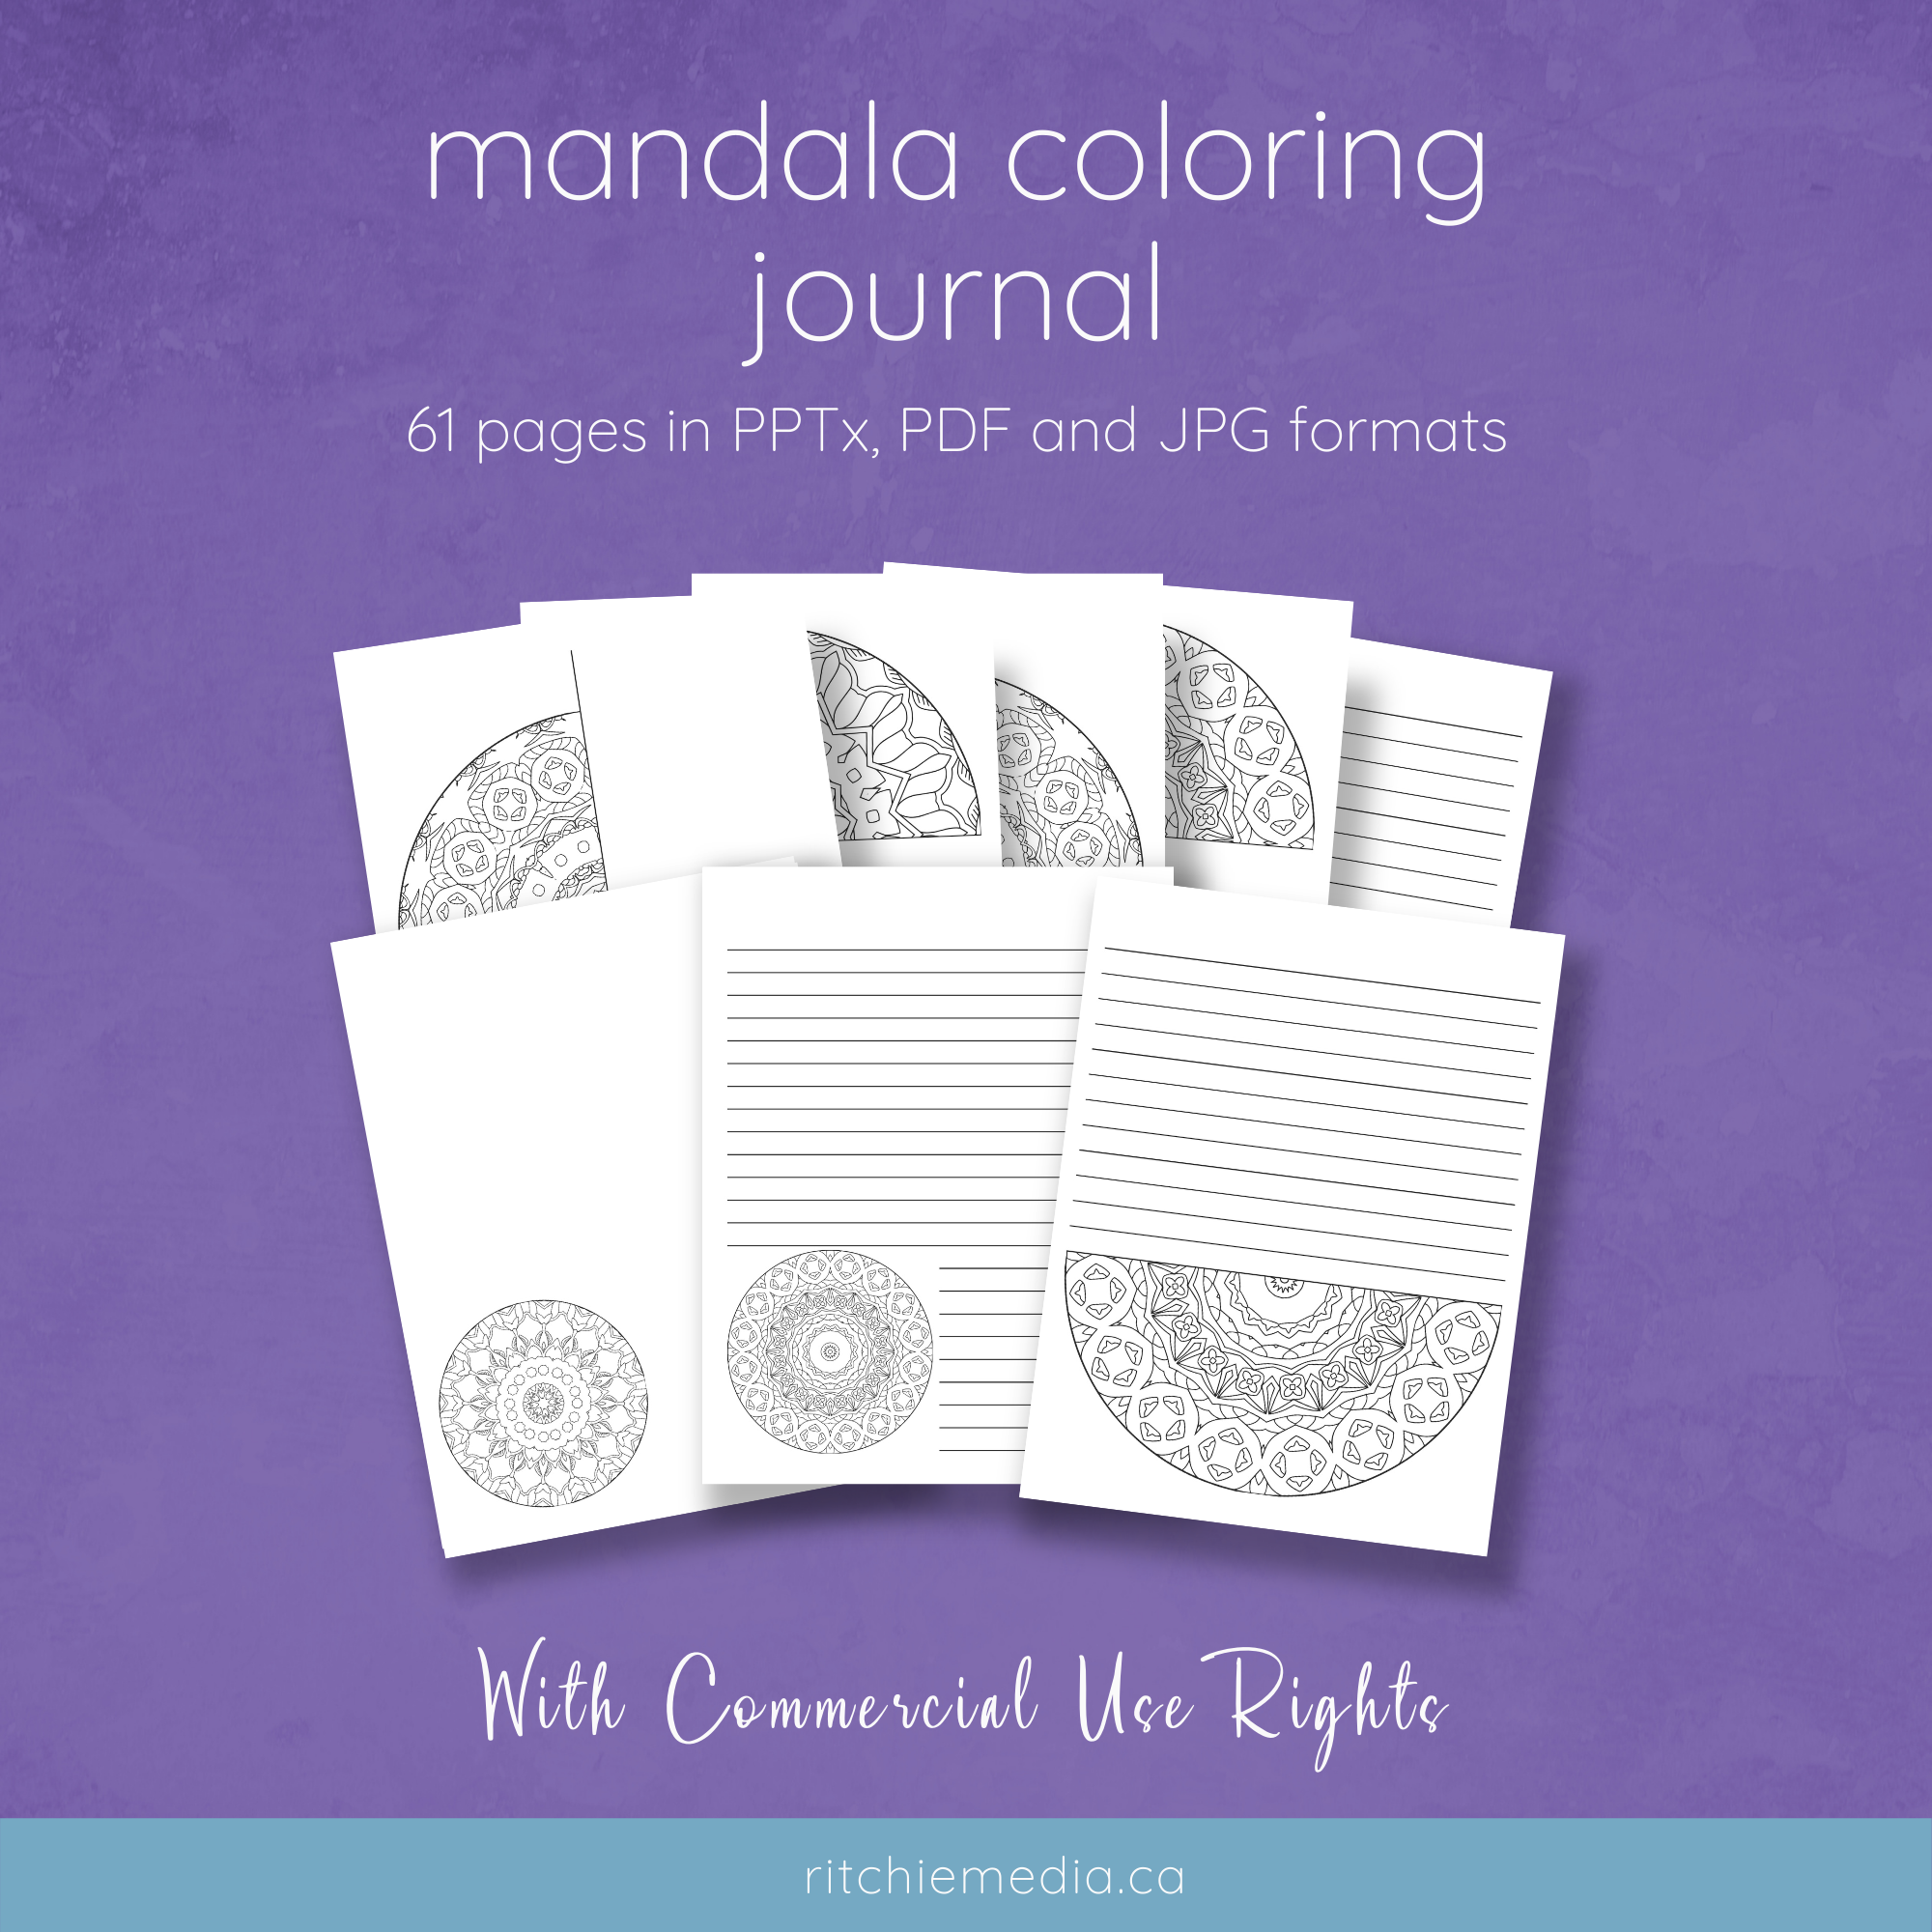 mandala coloring journal mockup